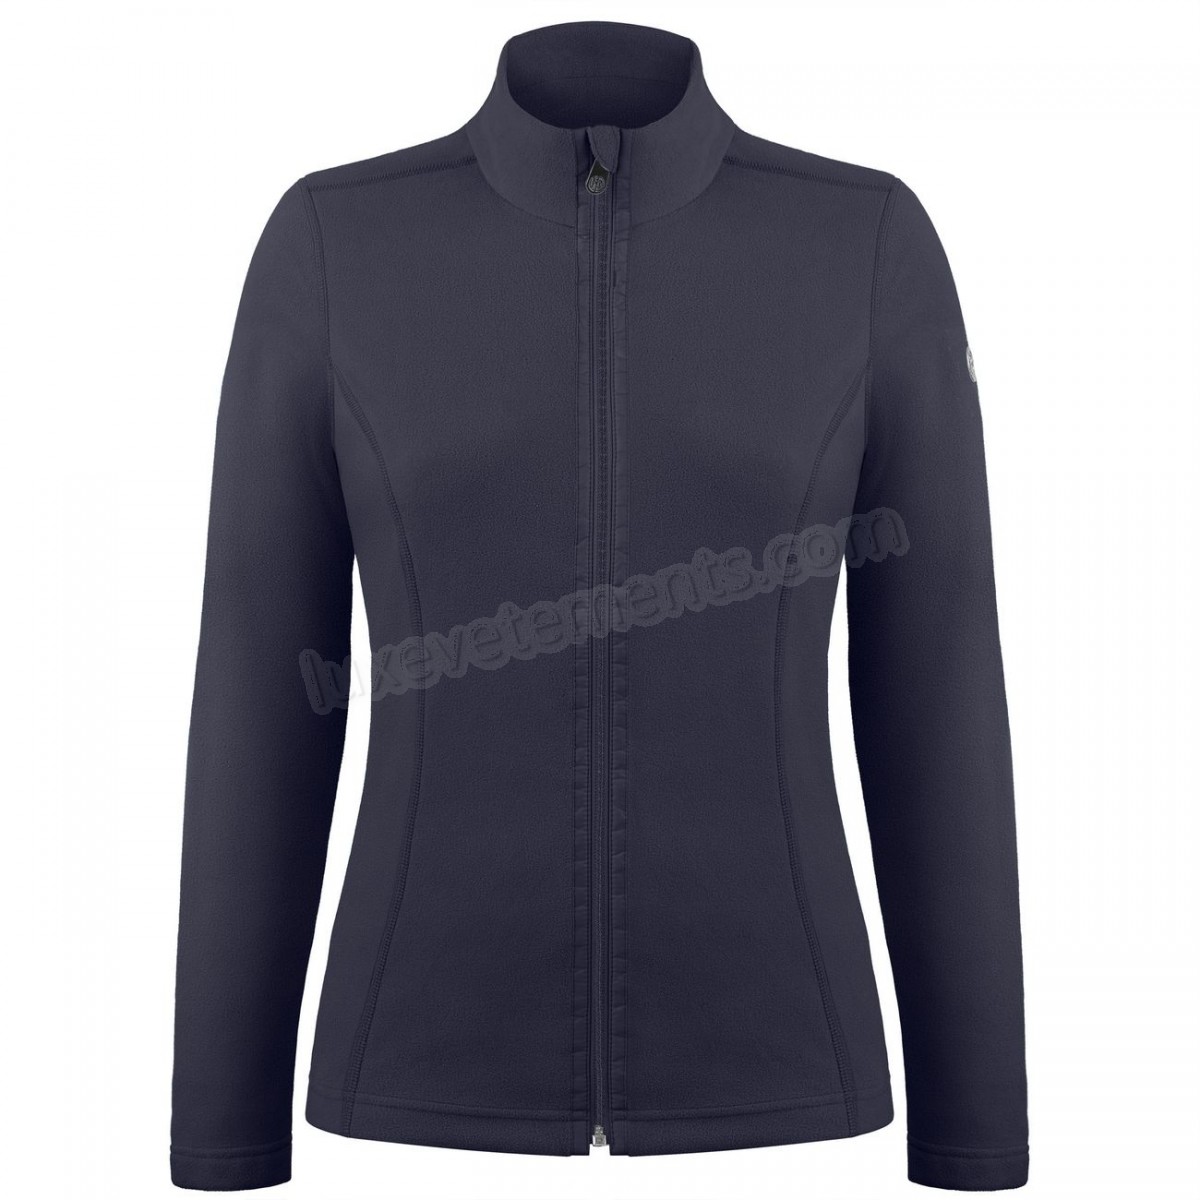 Poivre Blanc-Sports d'hiver femme POIVRE BLANC Veste Polaire Poivre Blanc Fleece Jacket 1500 Gothic Blue 4 Femme Vente en ligne - -2